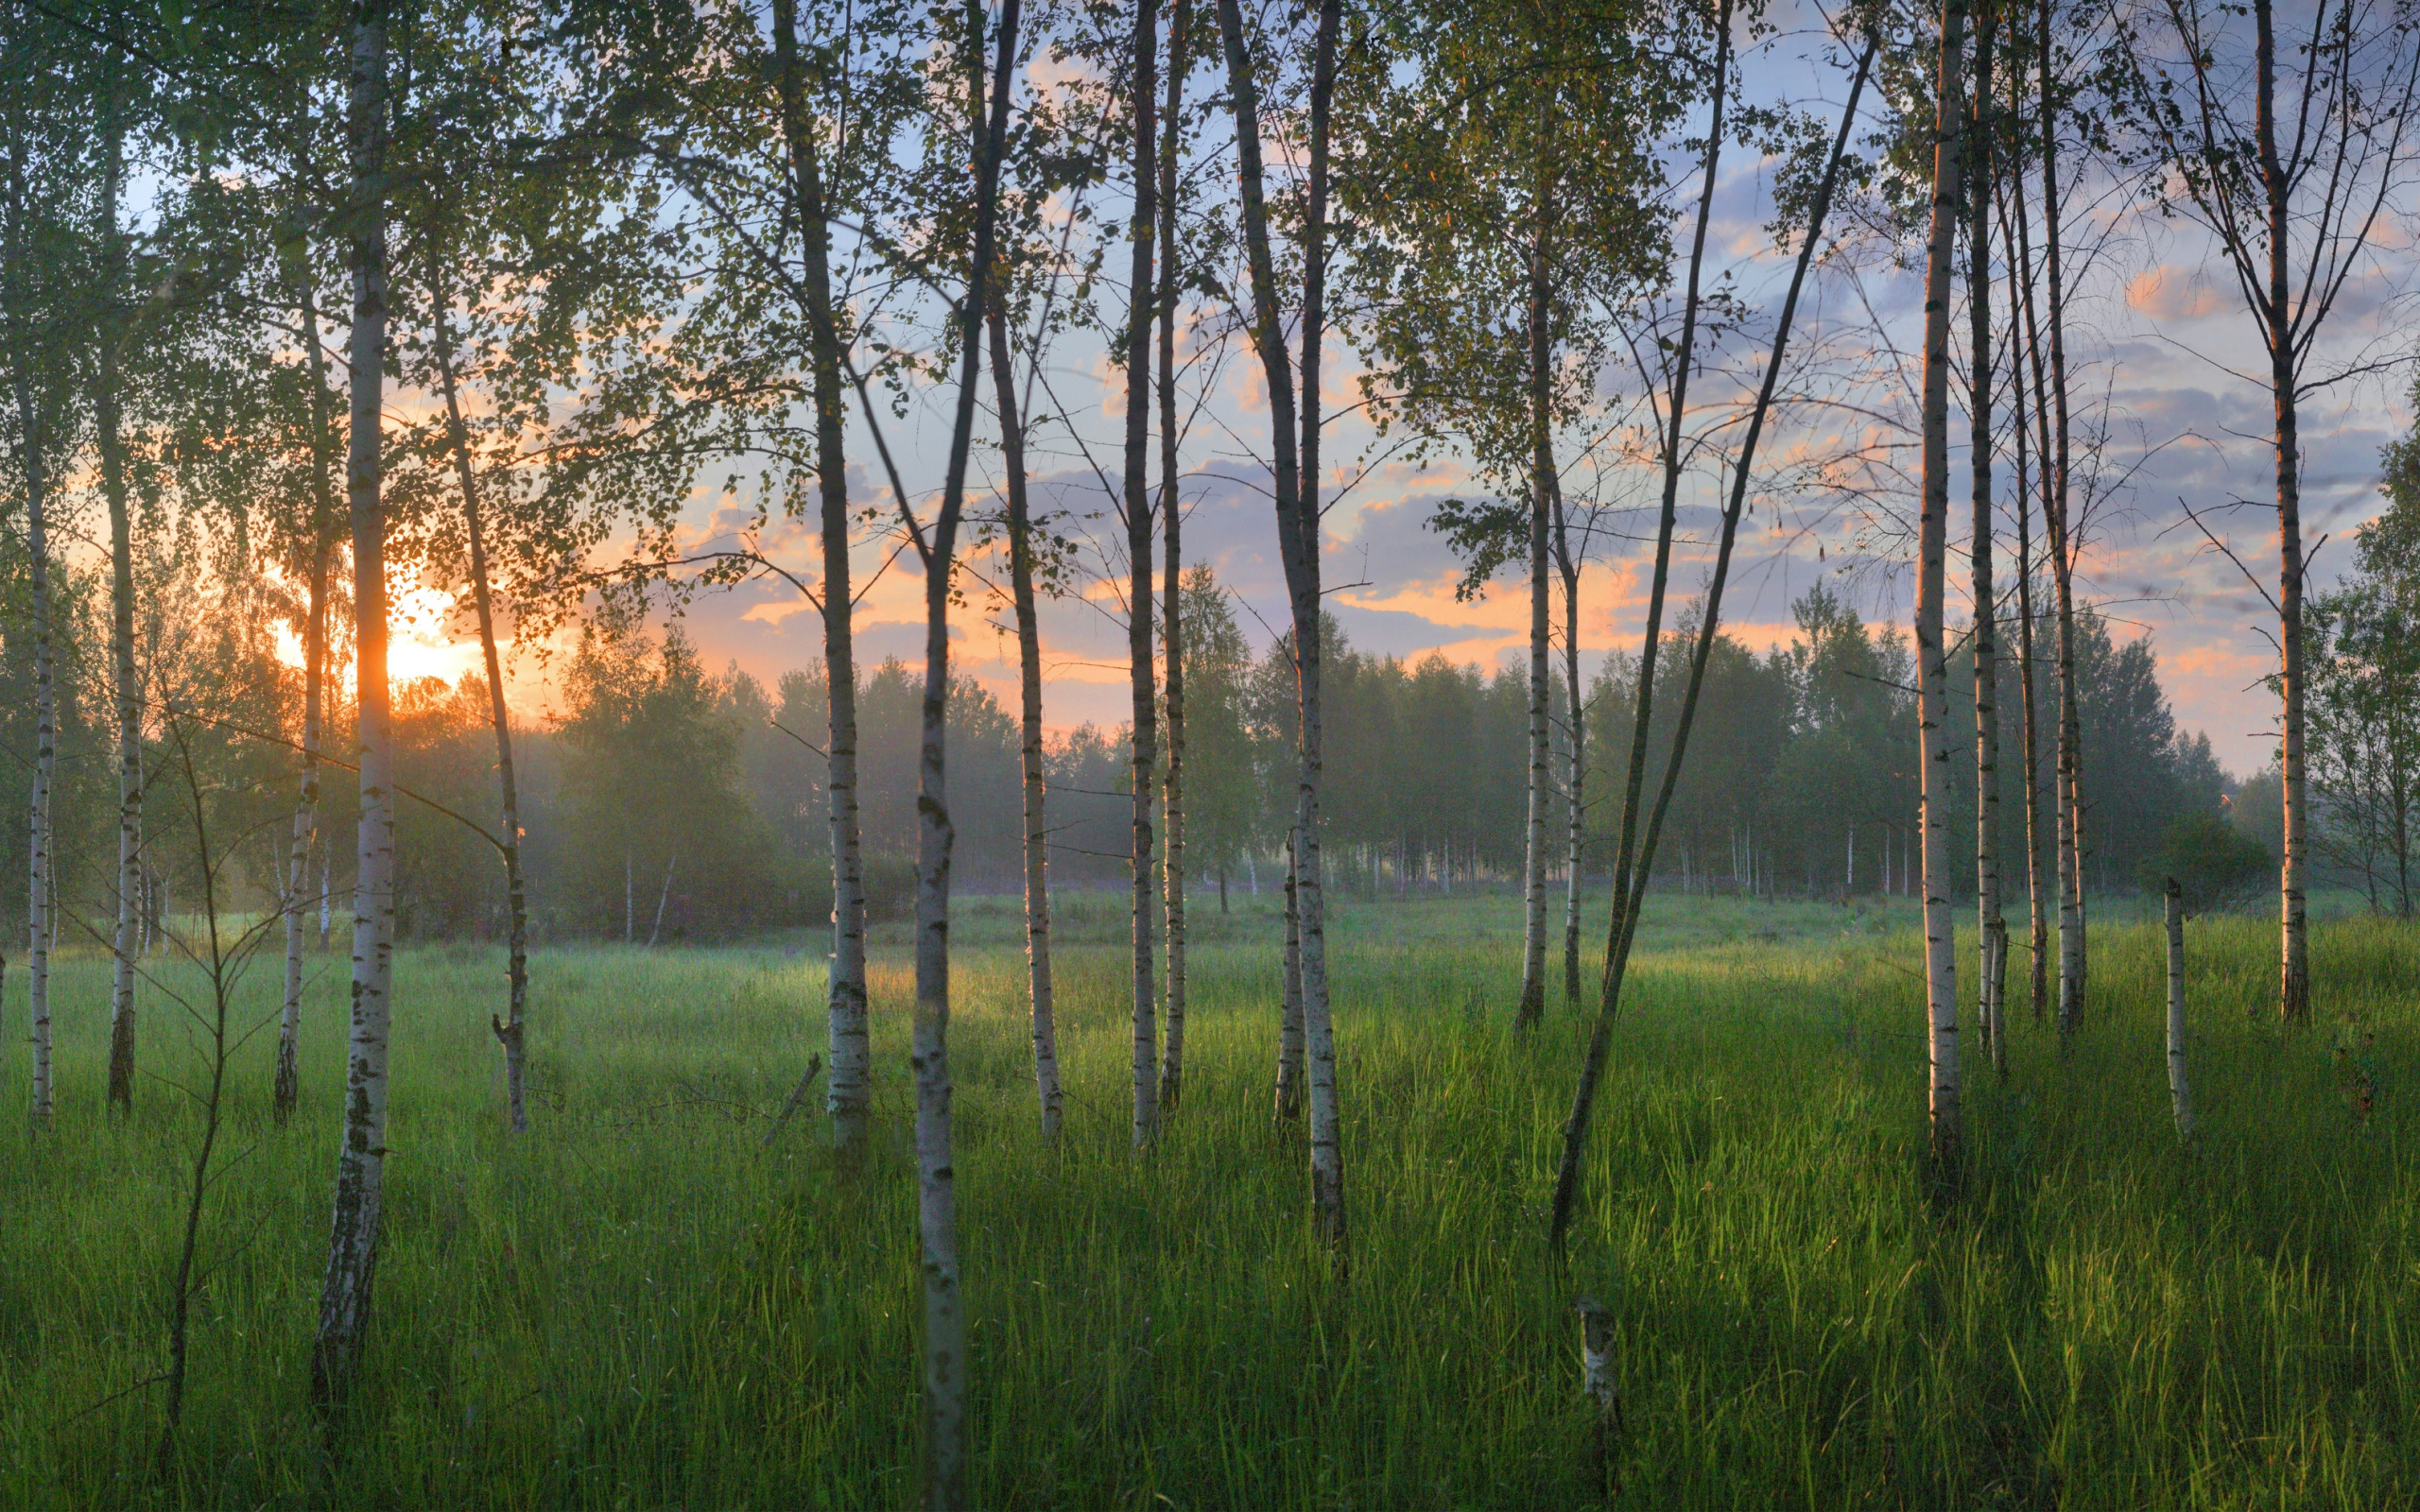 Текст ранним утром в лесу на полях. Раннее утро в лесу. Березы обои. Утренний лес. Березовый лес осенью.